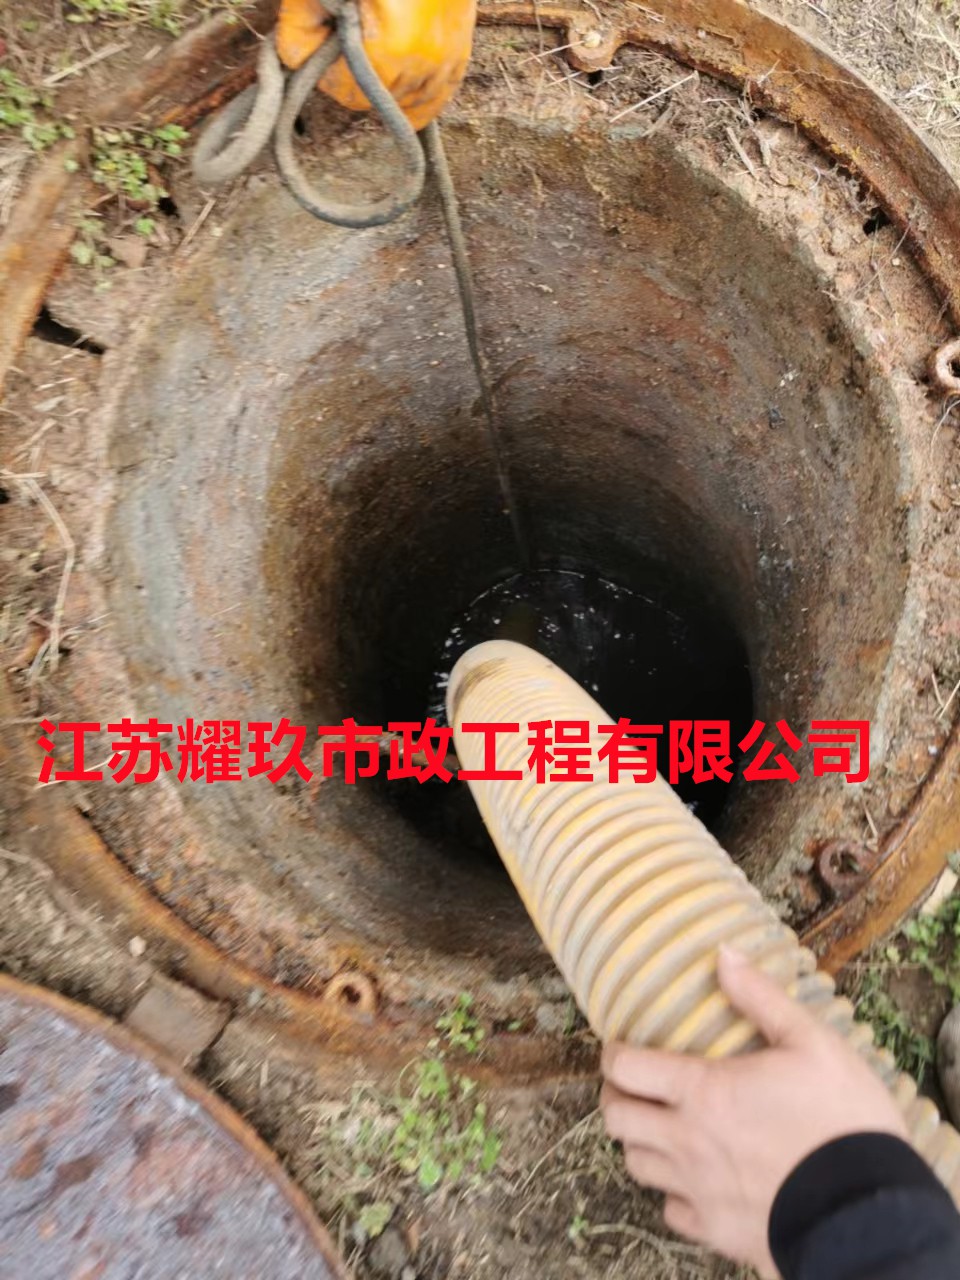 江西省南昌市专业清理污水处理厂污泥-专业服务